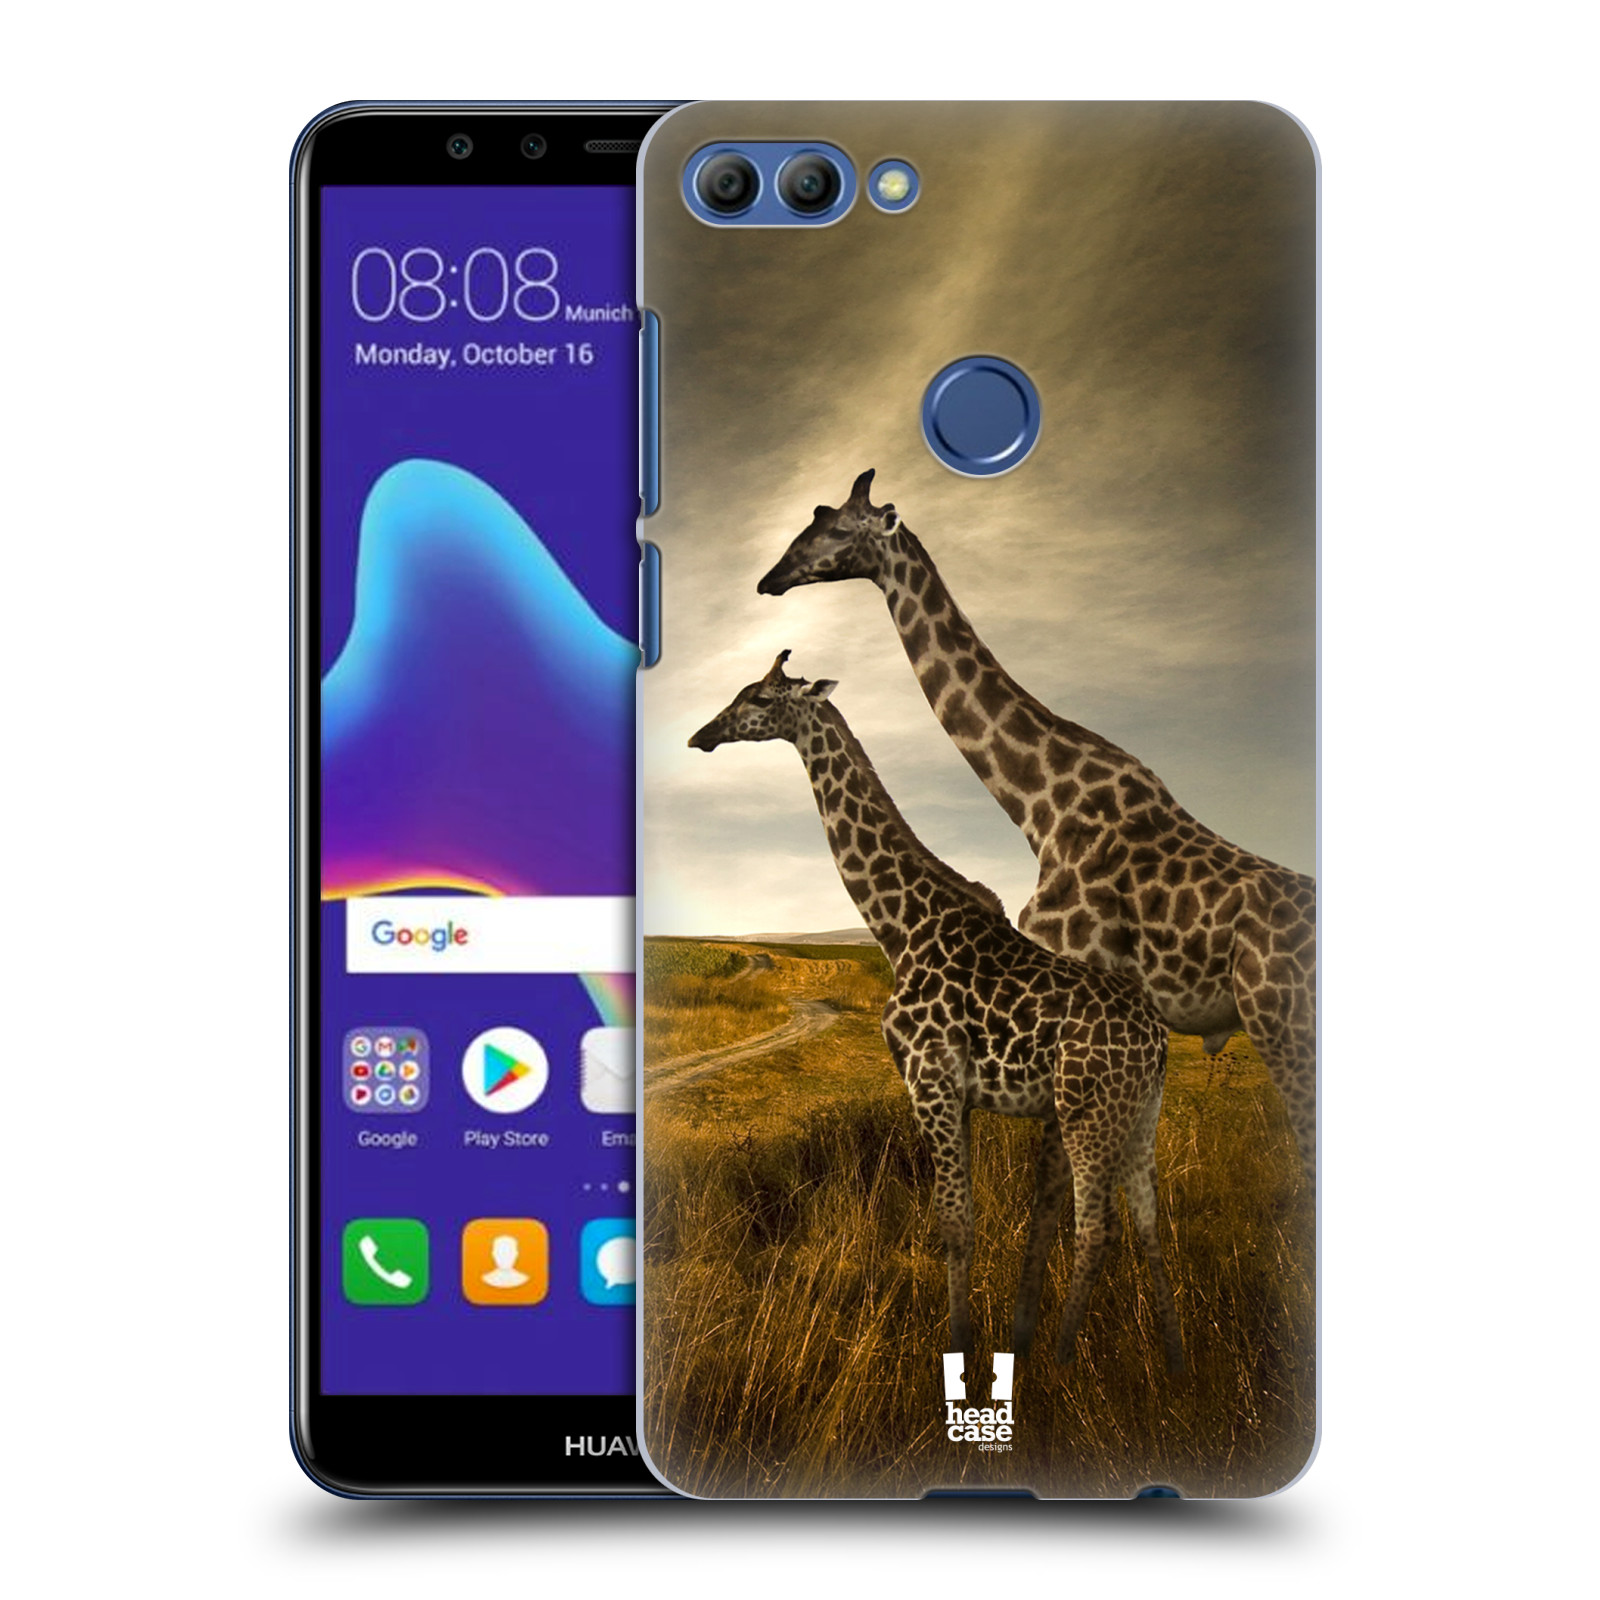 HEAD CASE plastový obal na mobil Huawei Y9 2018 vzor Divočina, Divoký život a zvířata foto AFRIKA ŽIRAFY VÝHLED